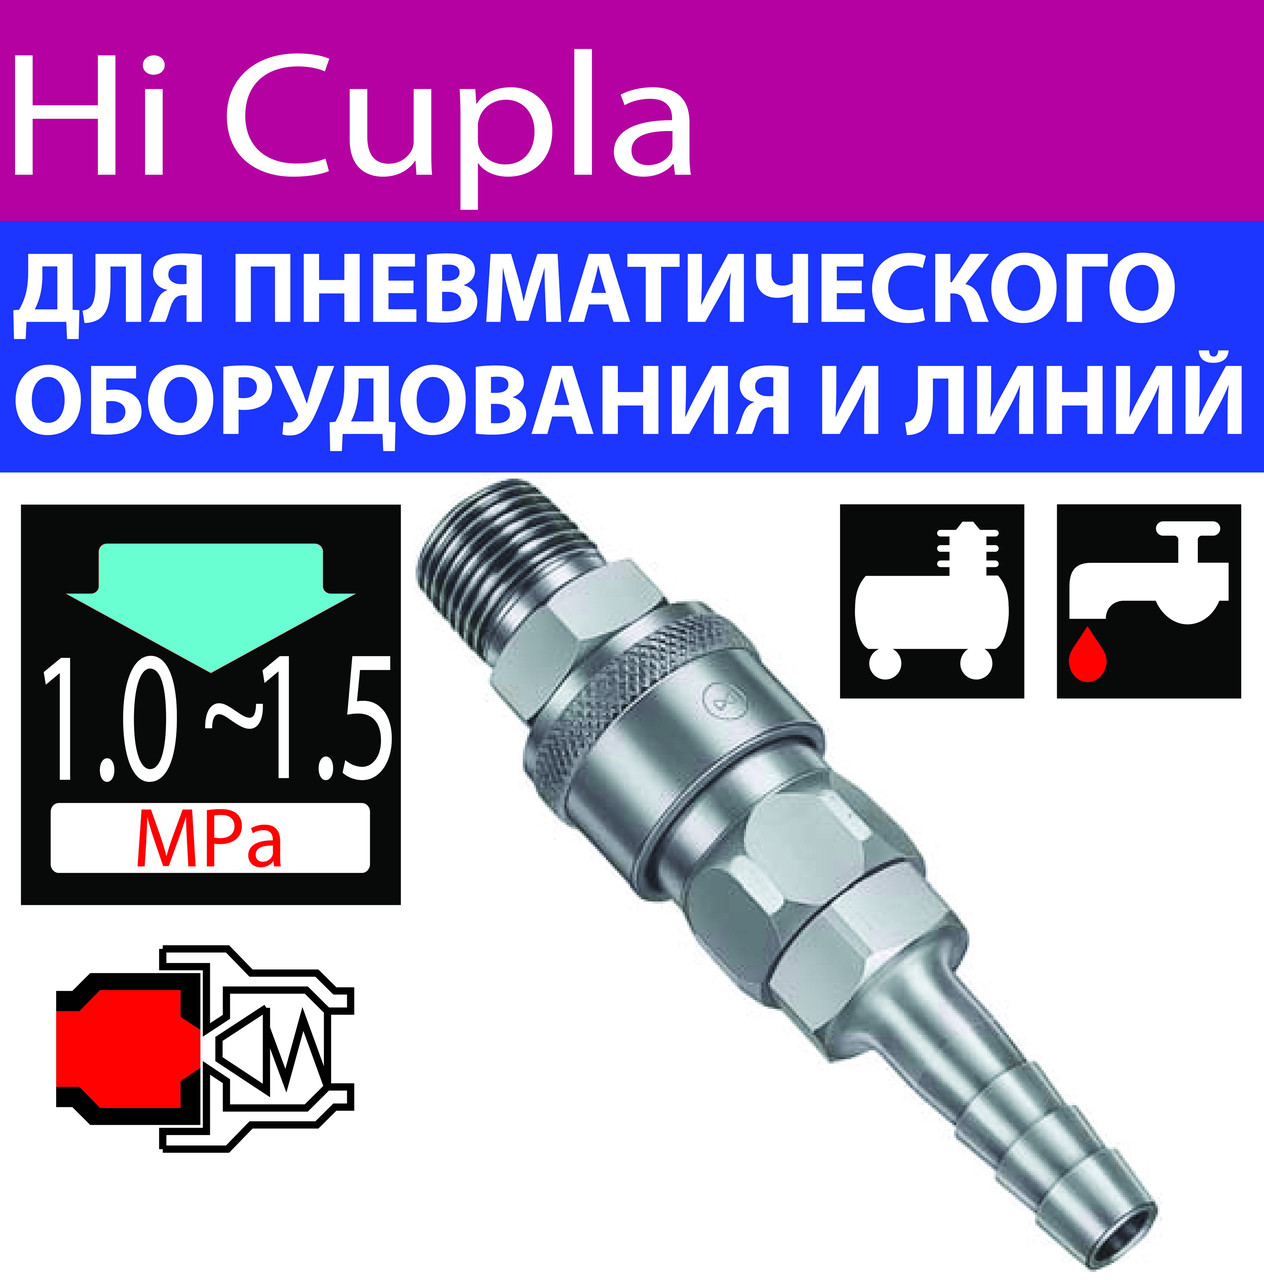 Швидкорознімні з'єднання для повітря пневматичного інструменту Hi Cupla